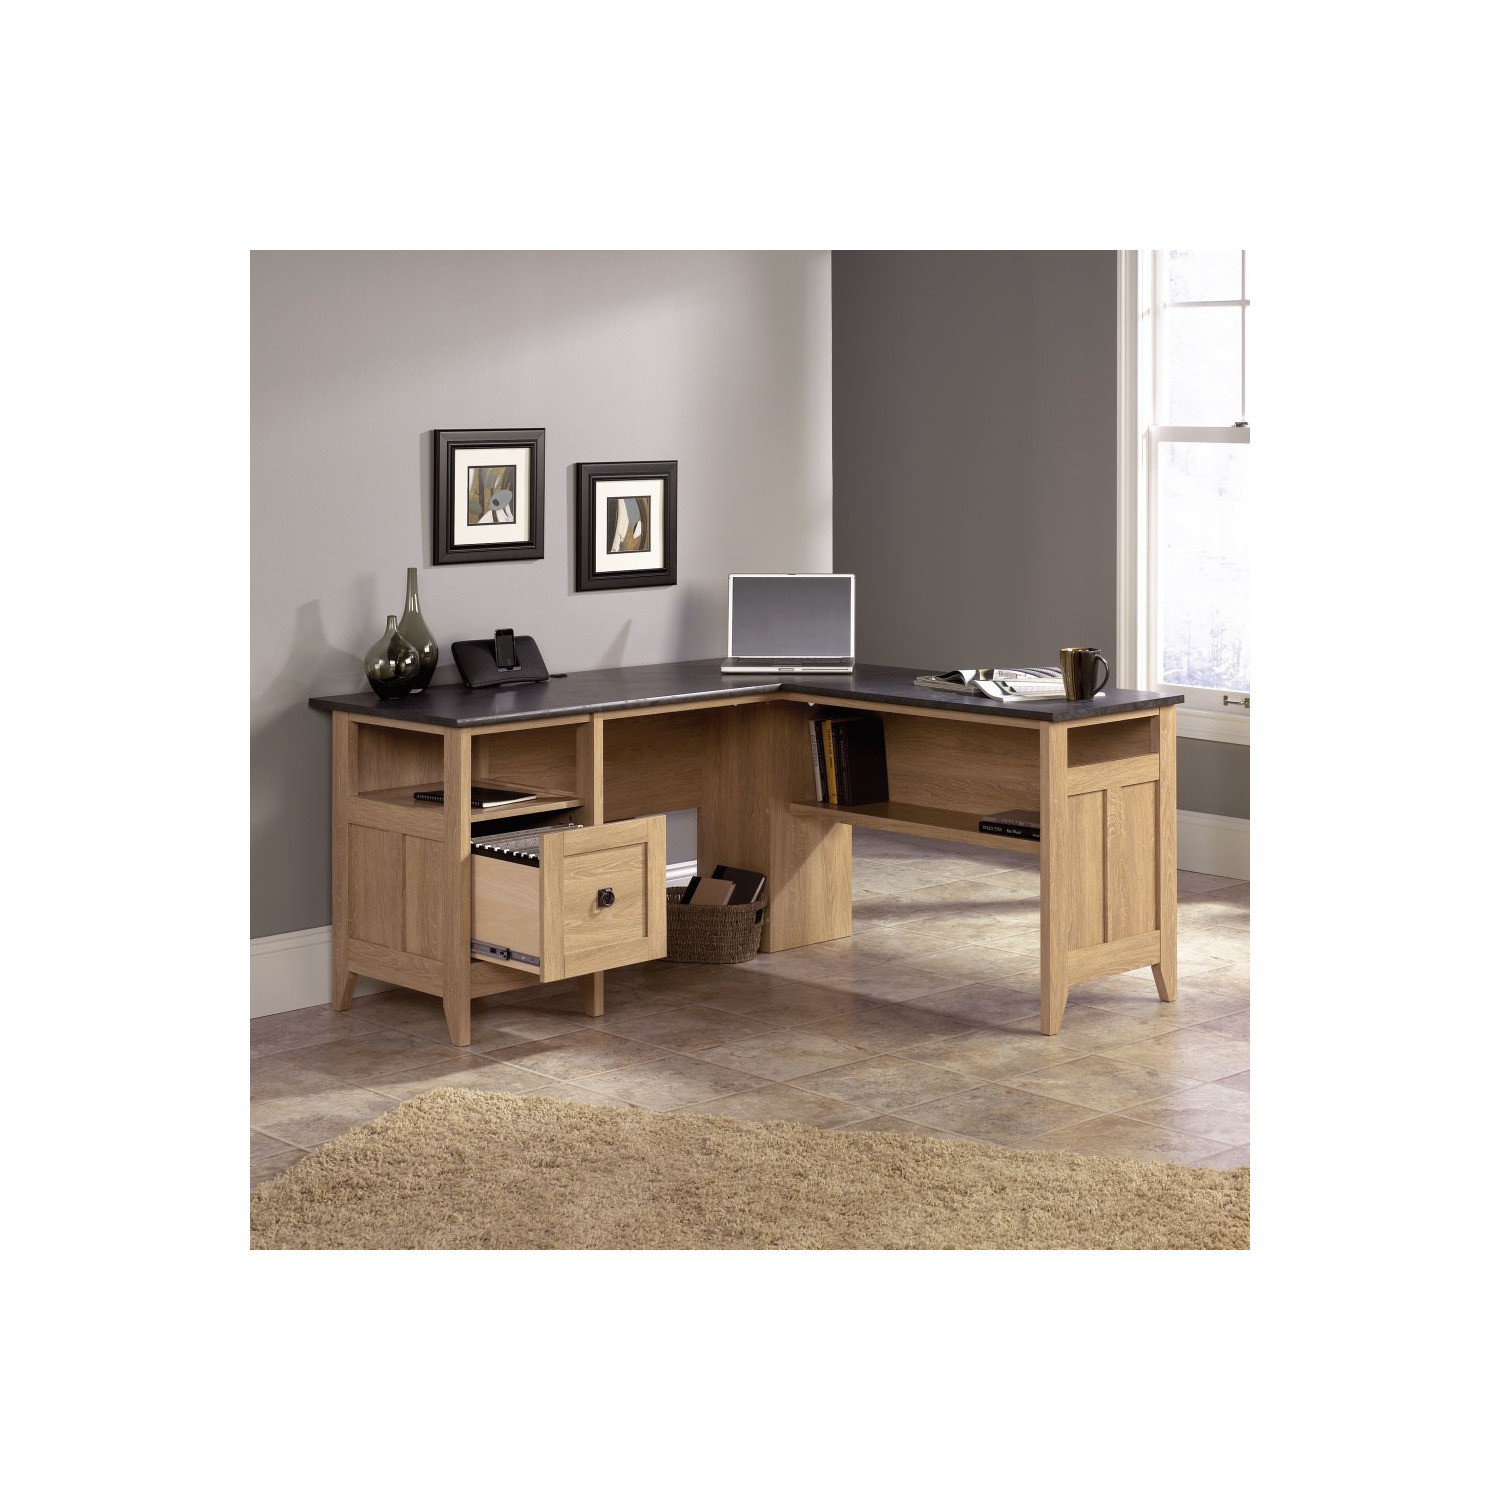 Photo of Oak effect l shaped desk with storage - teknik office